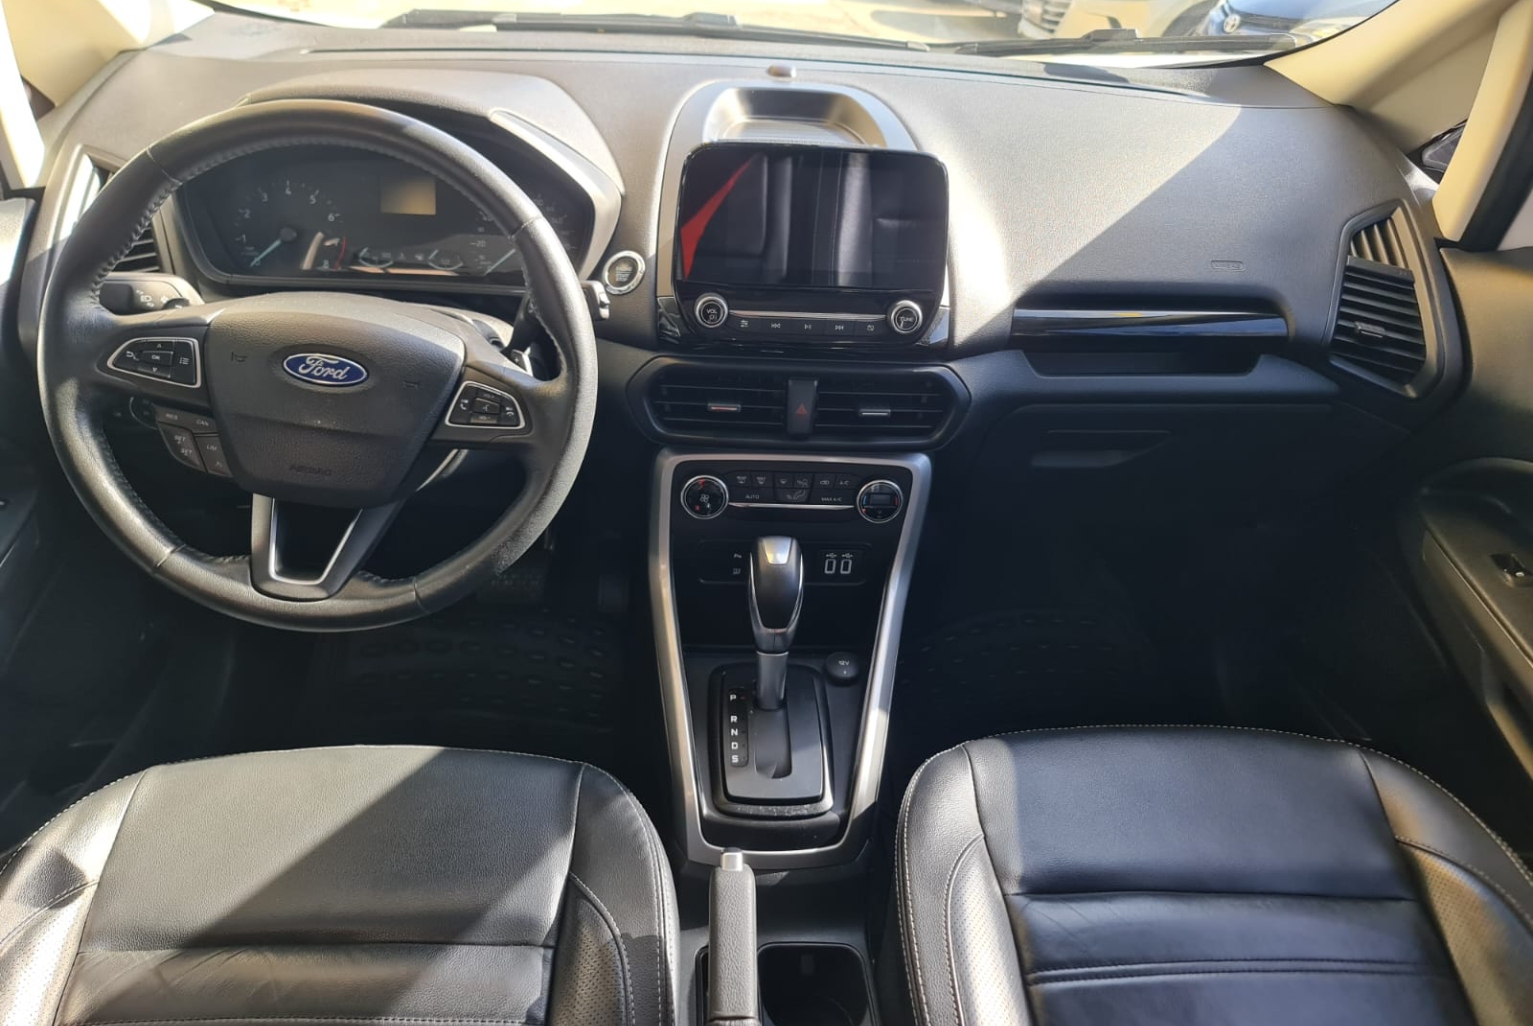 Ford Eco Sport 2018 Automático color Blanco, Imagen #9